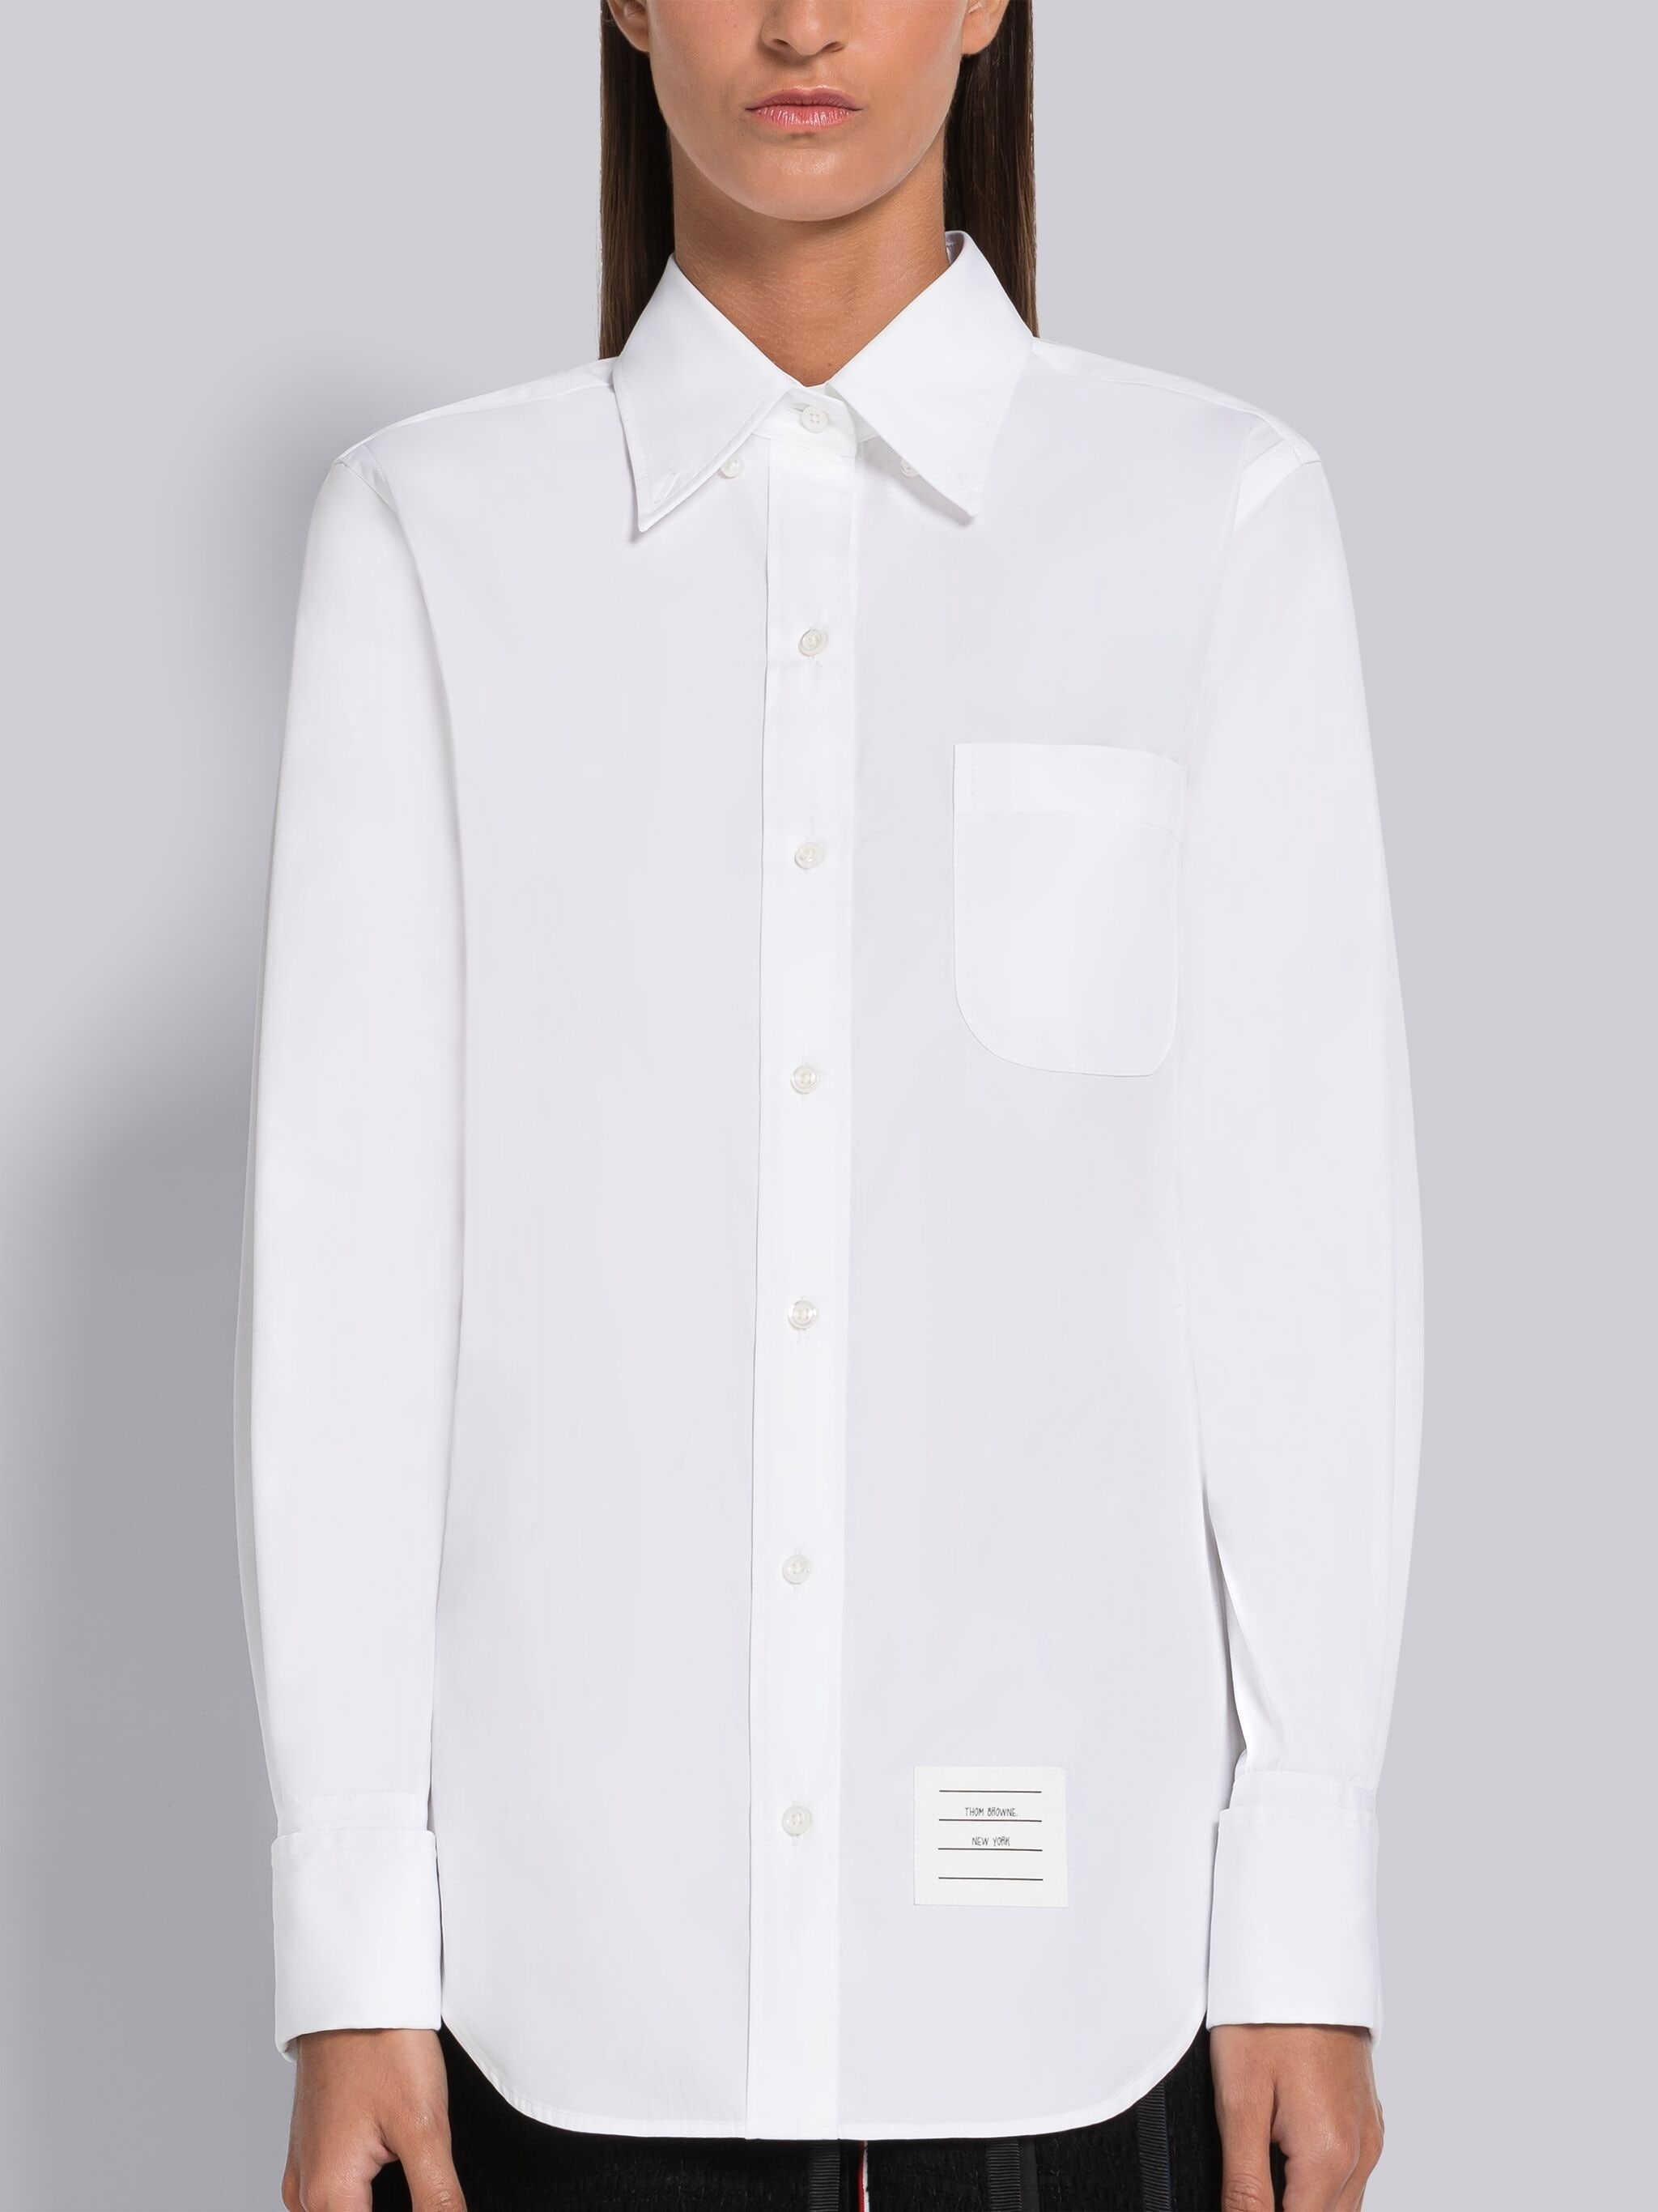 Solid Poplin French Cuff Shirt - 3